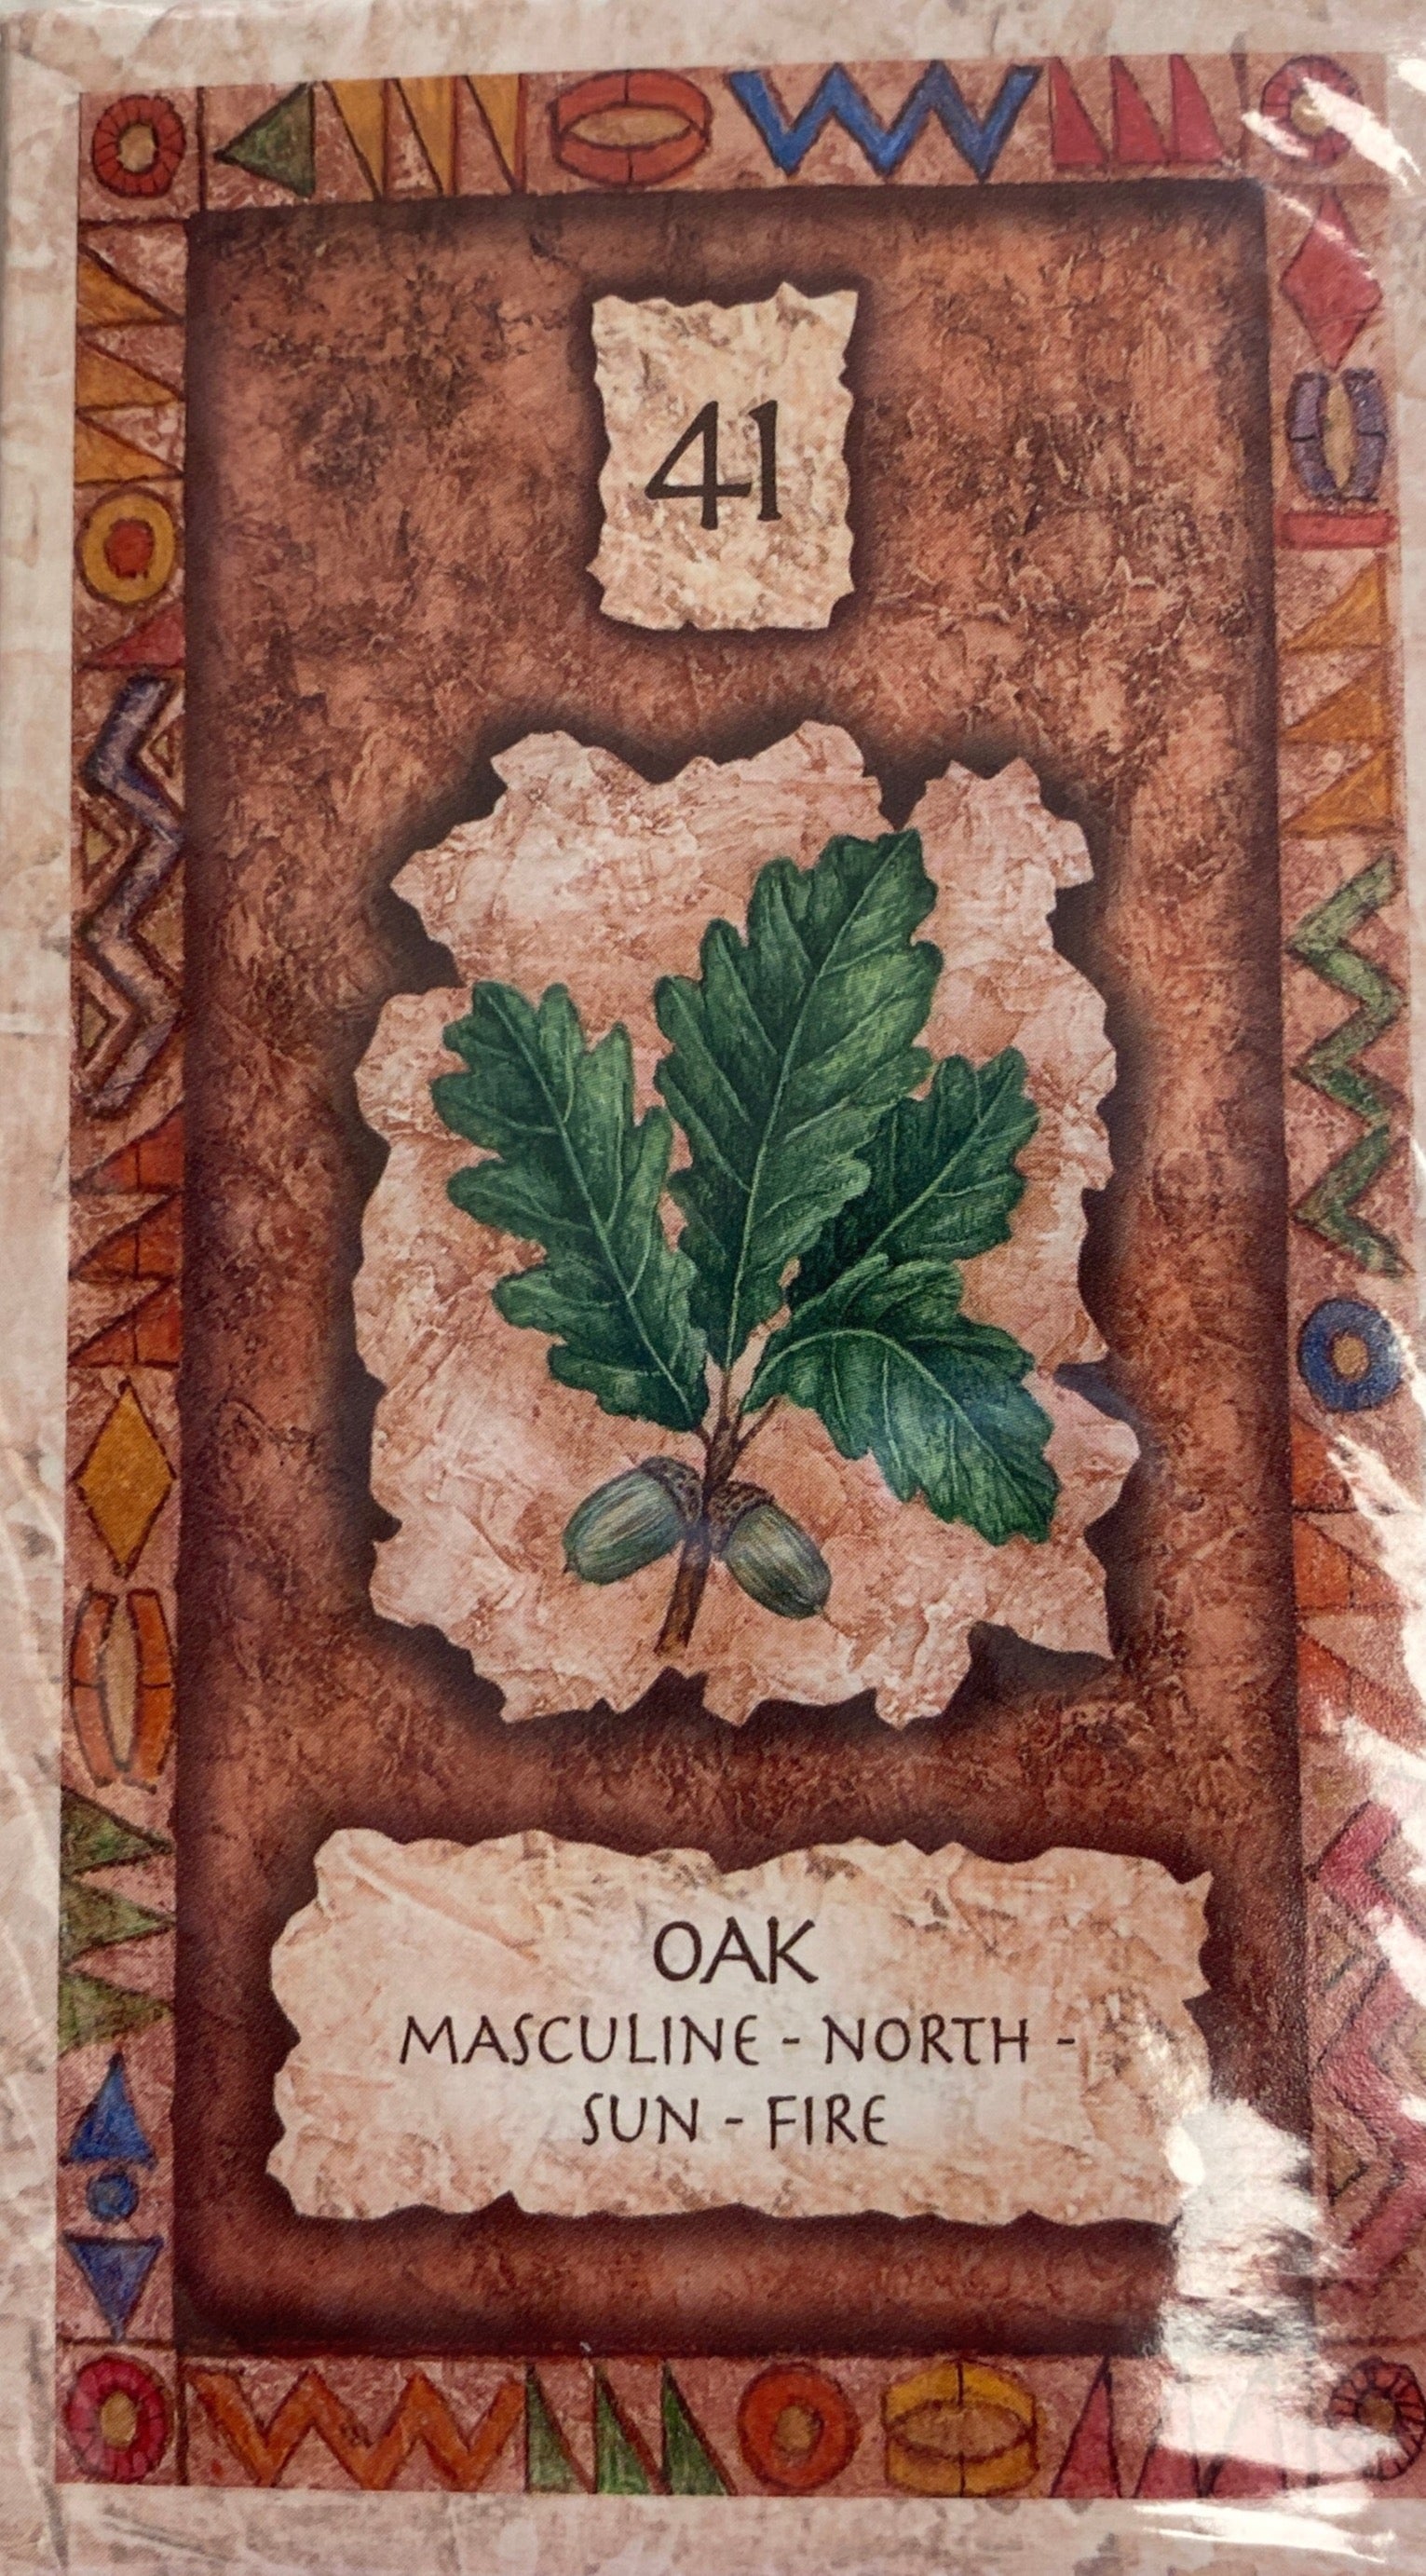 Back of deck is an image of a card number 41 Oak leaf 